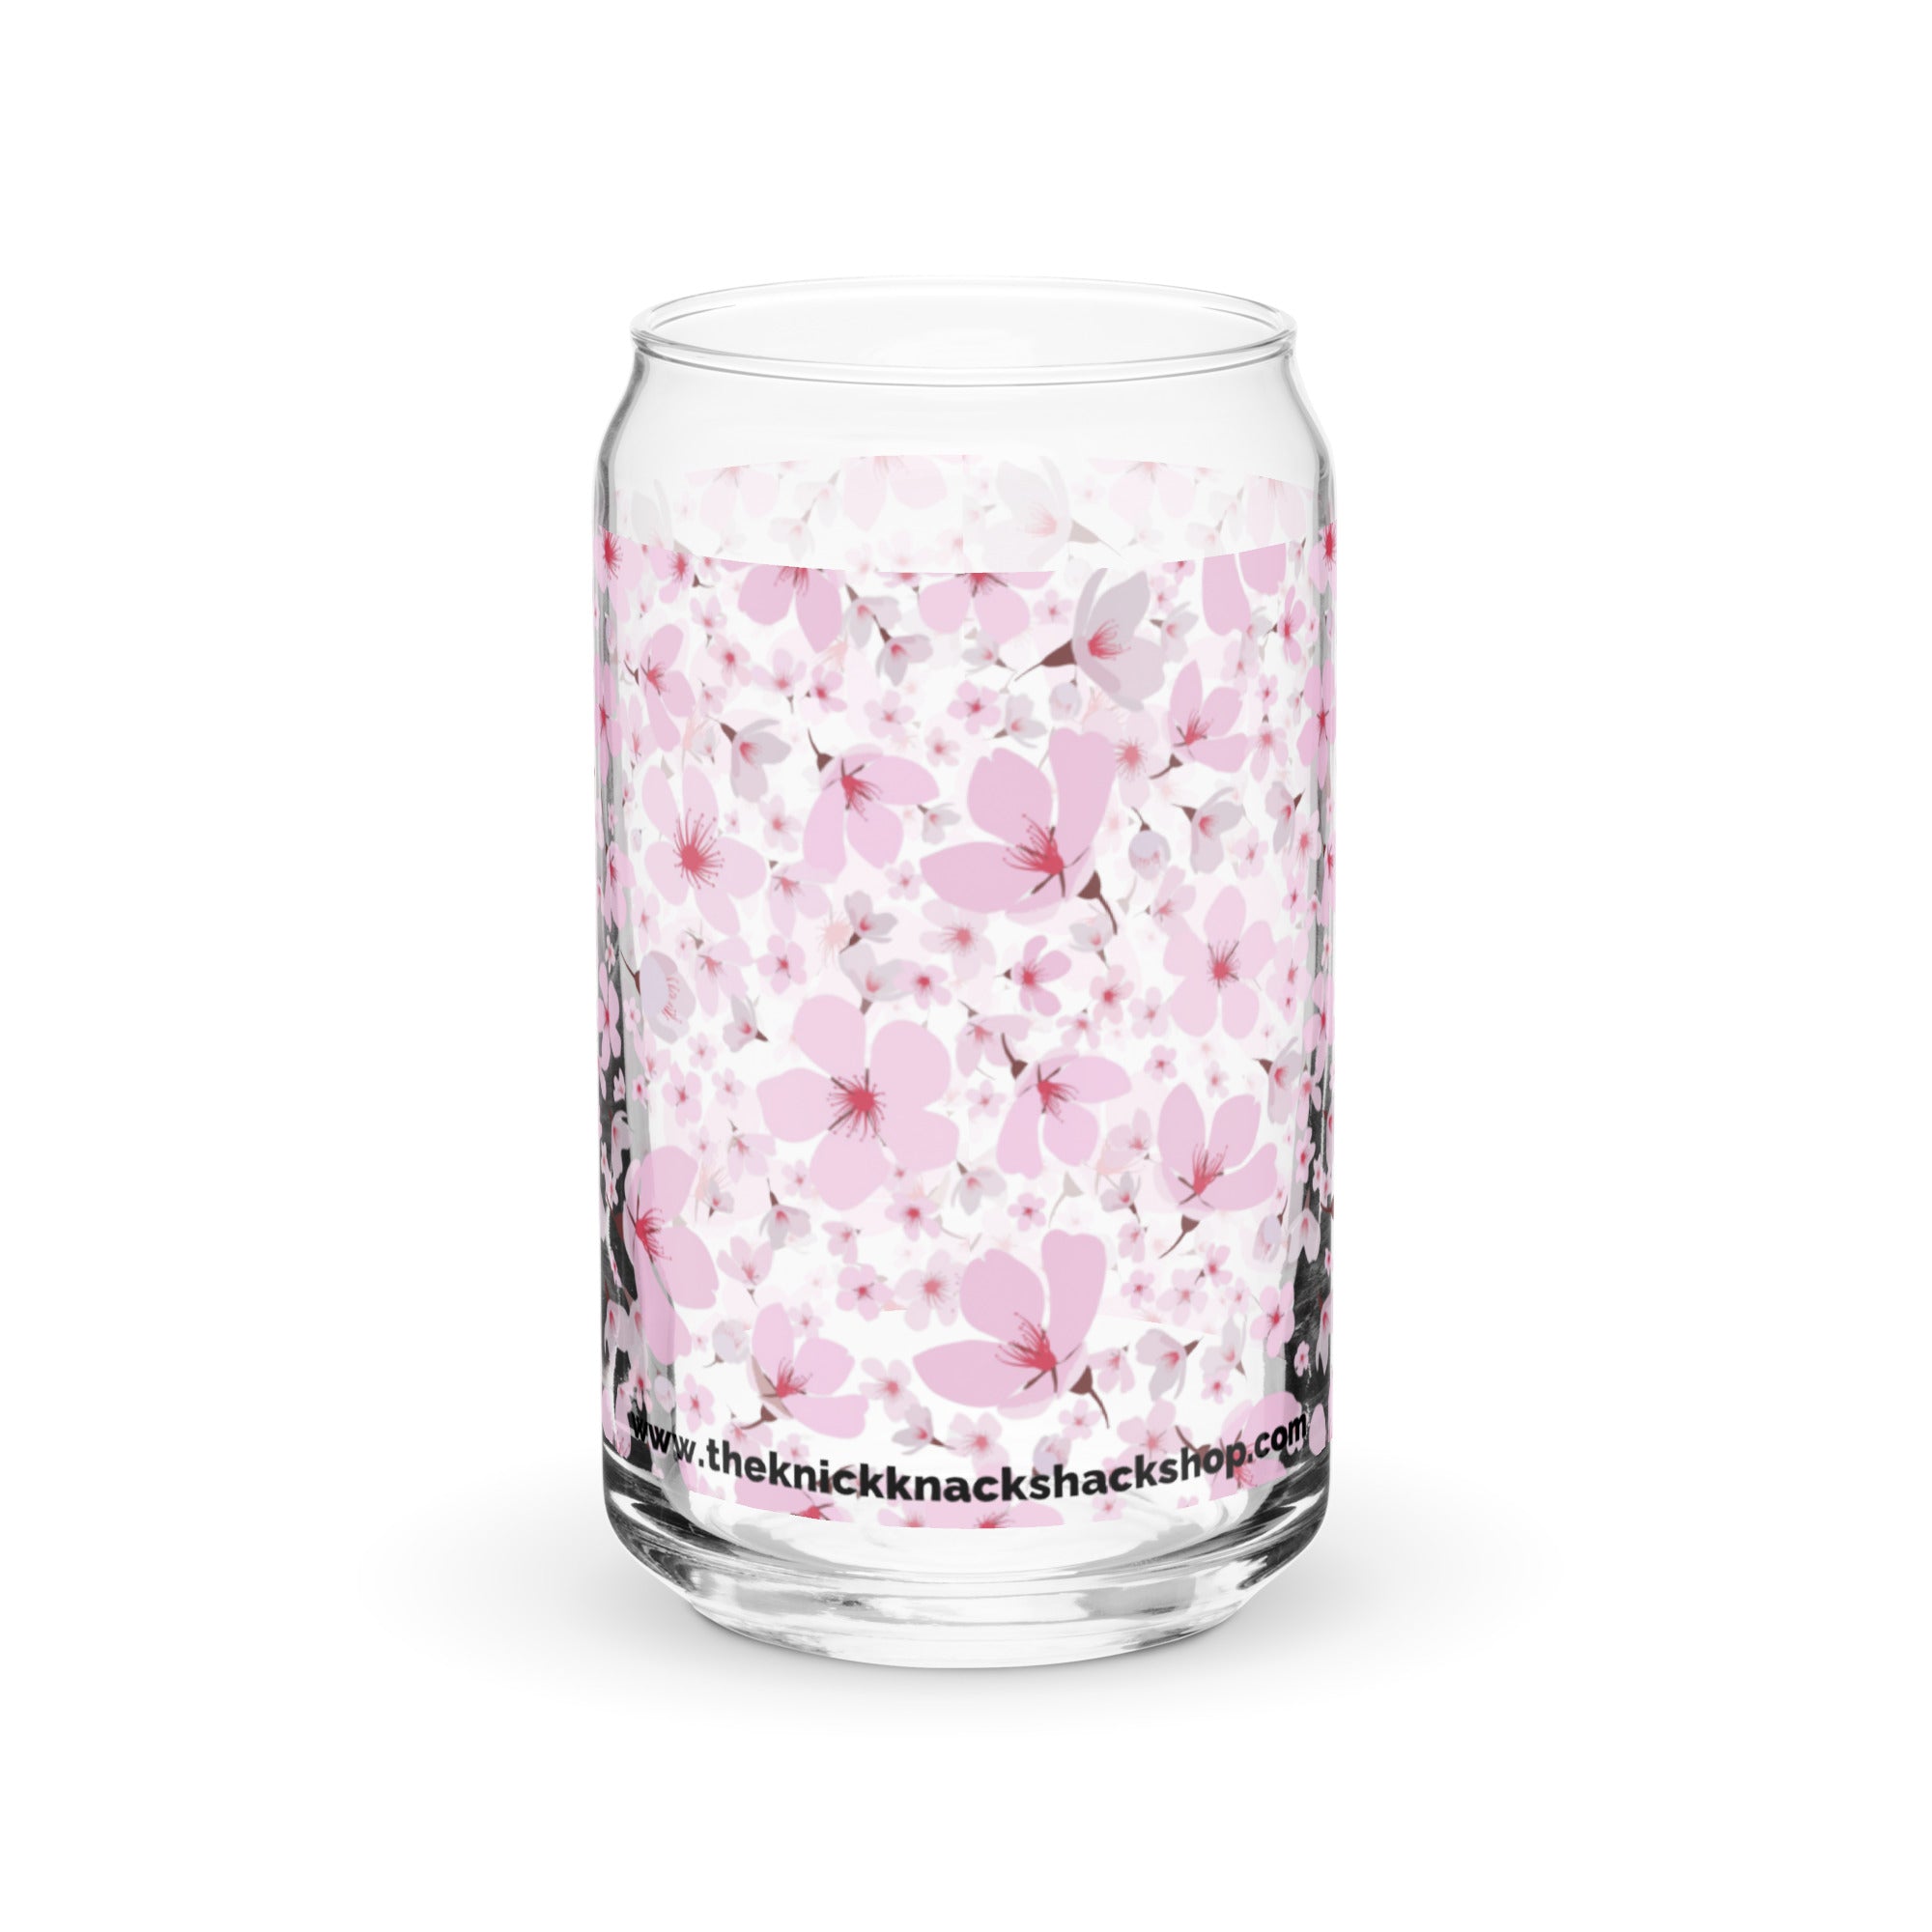 Vaso con forma de lata (16 oz) - Flores de cerezo